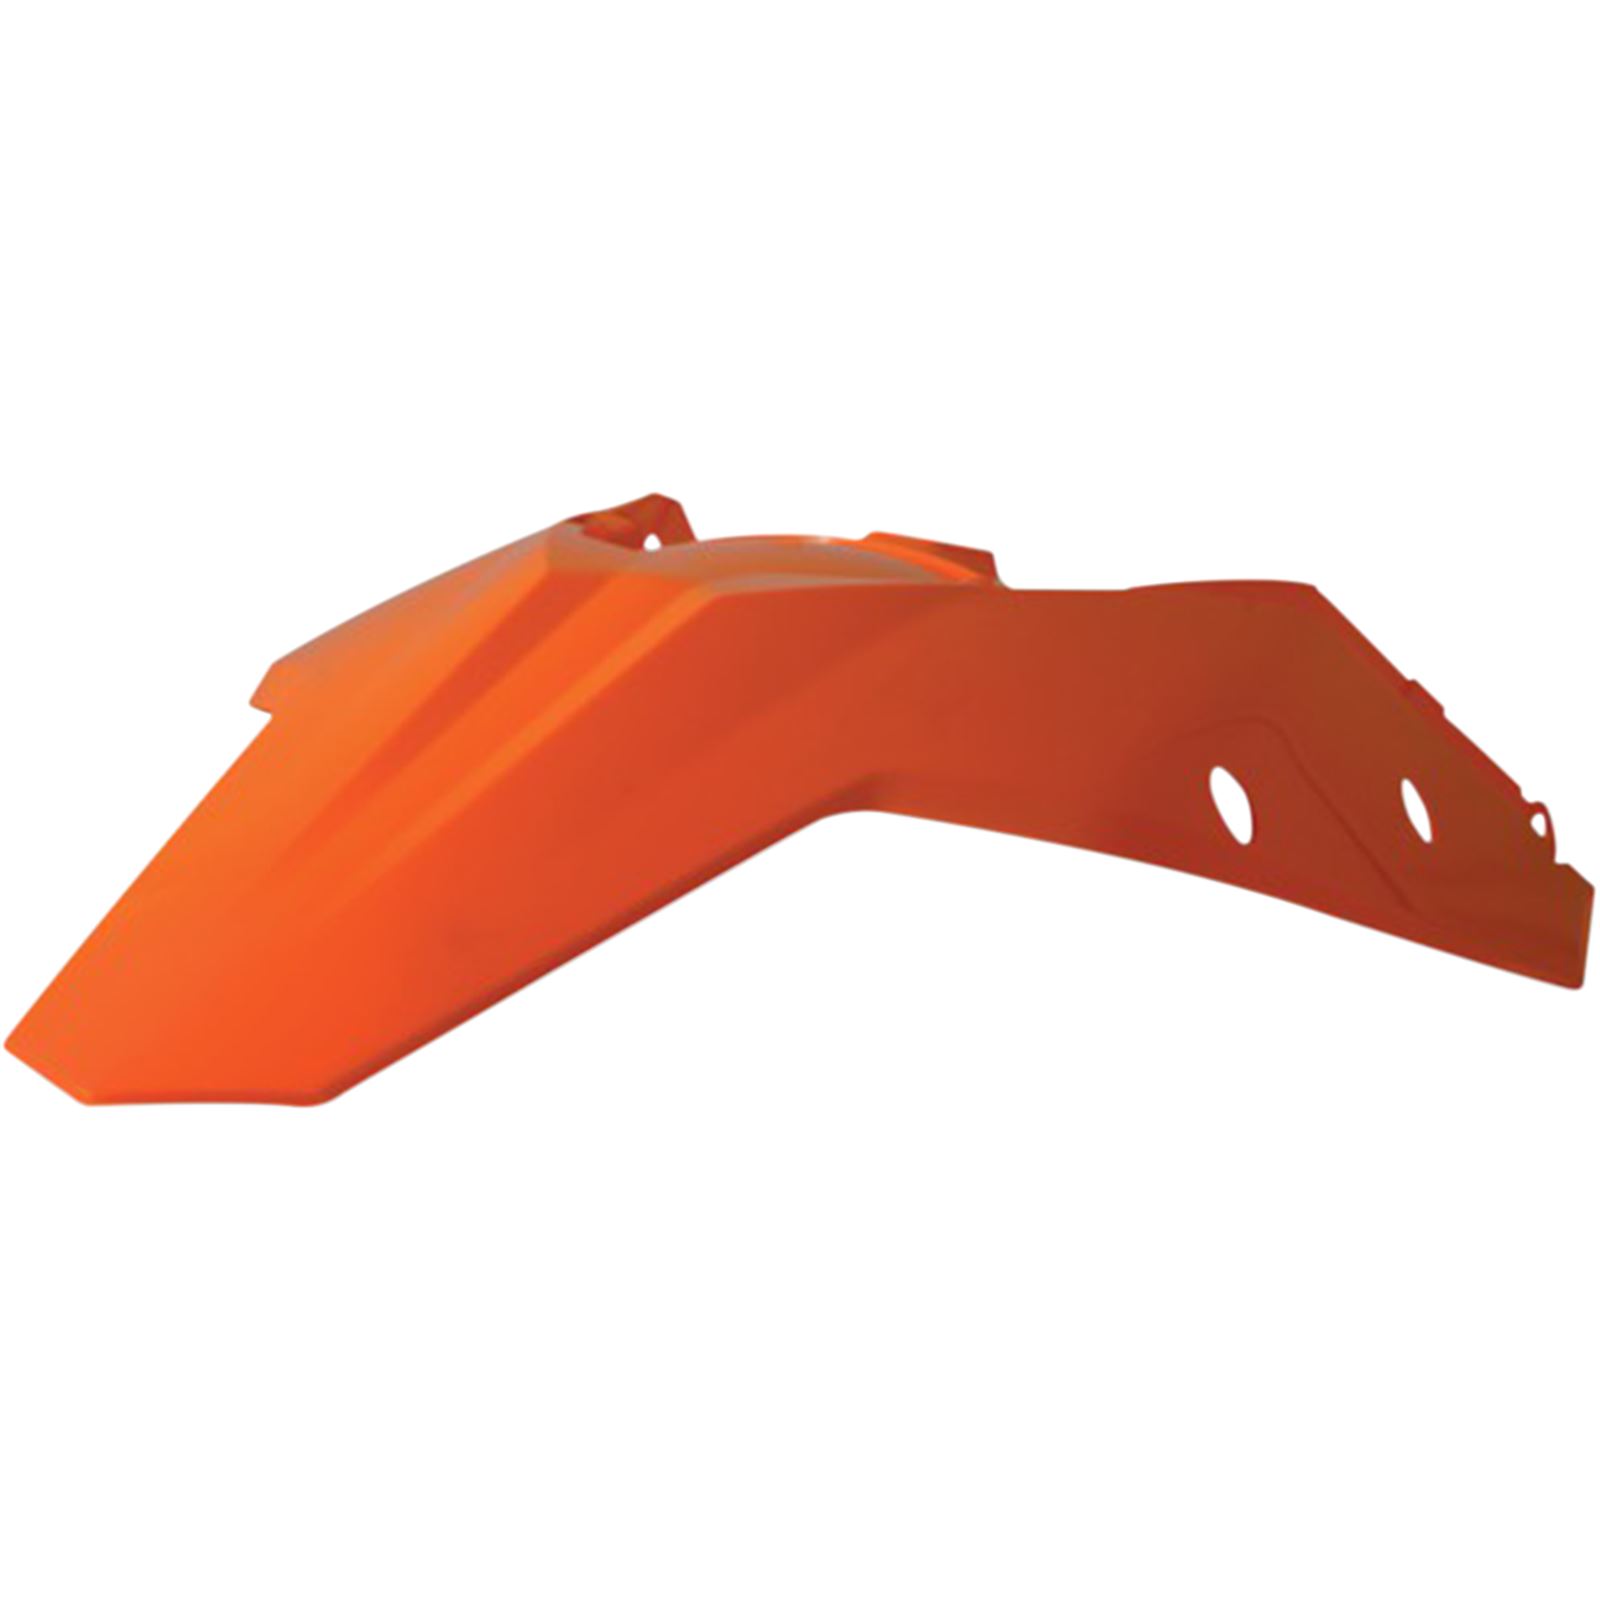 Acerbis Plastic Rear Fender - Orange